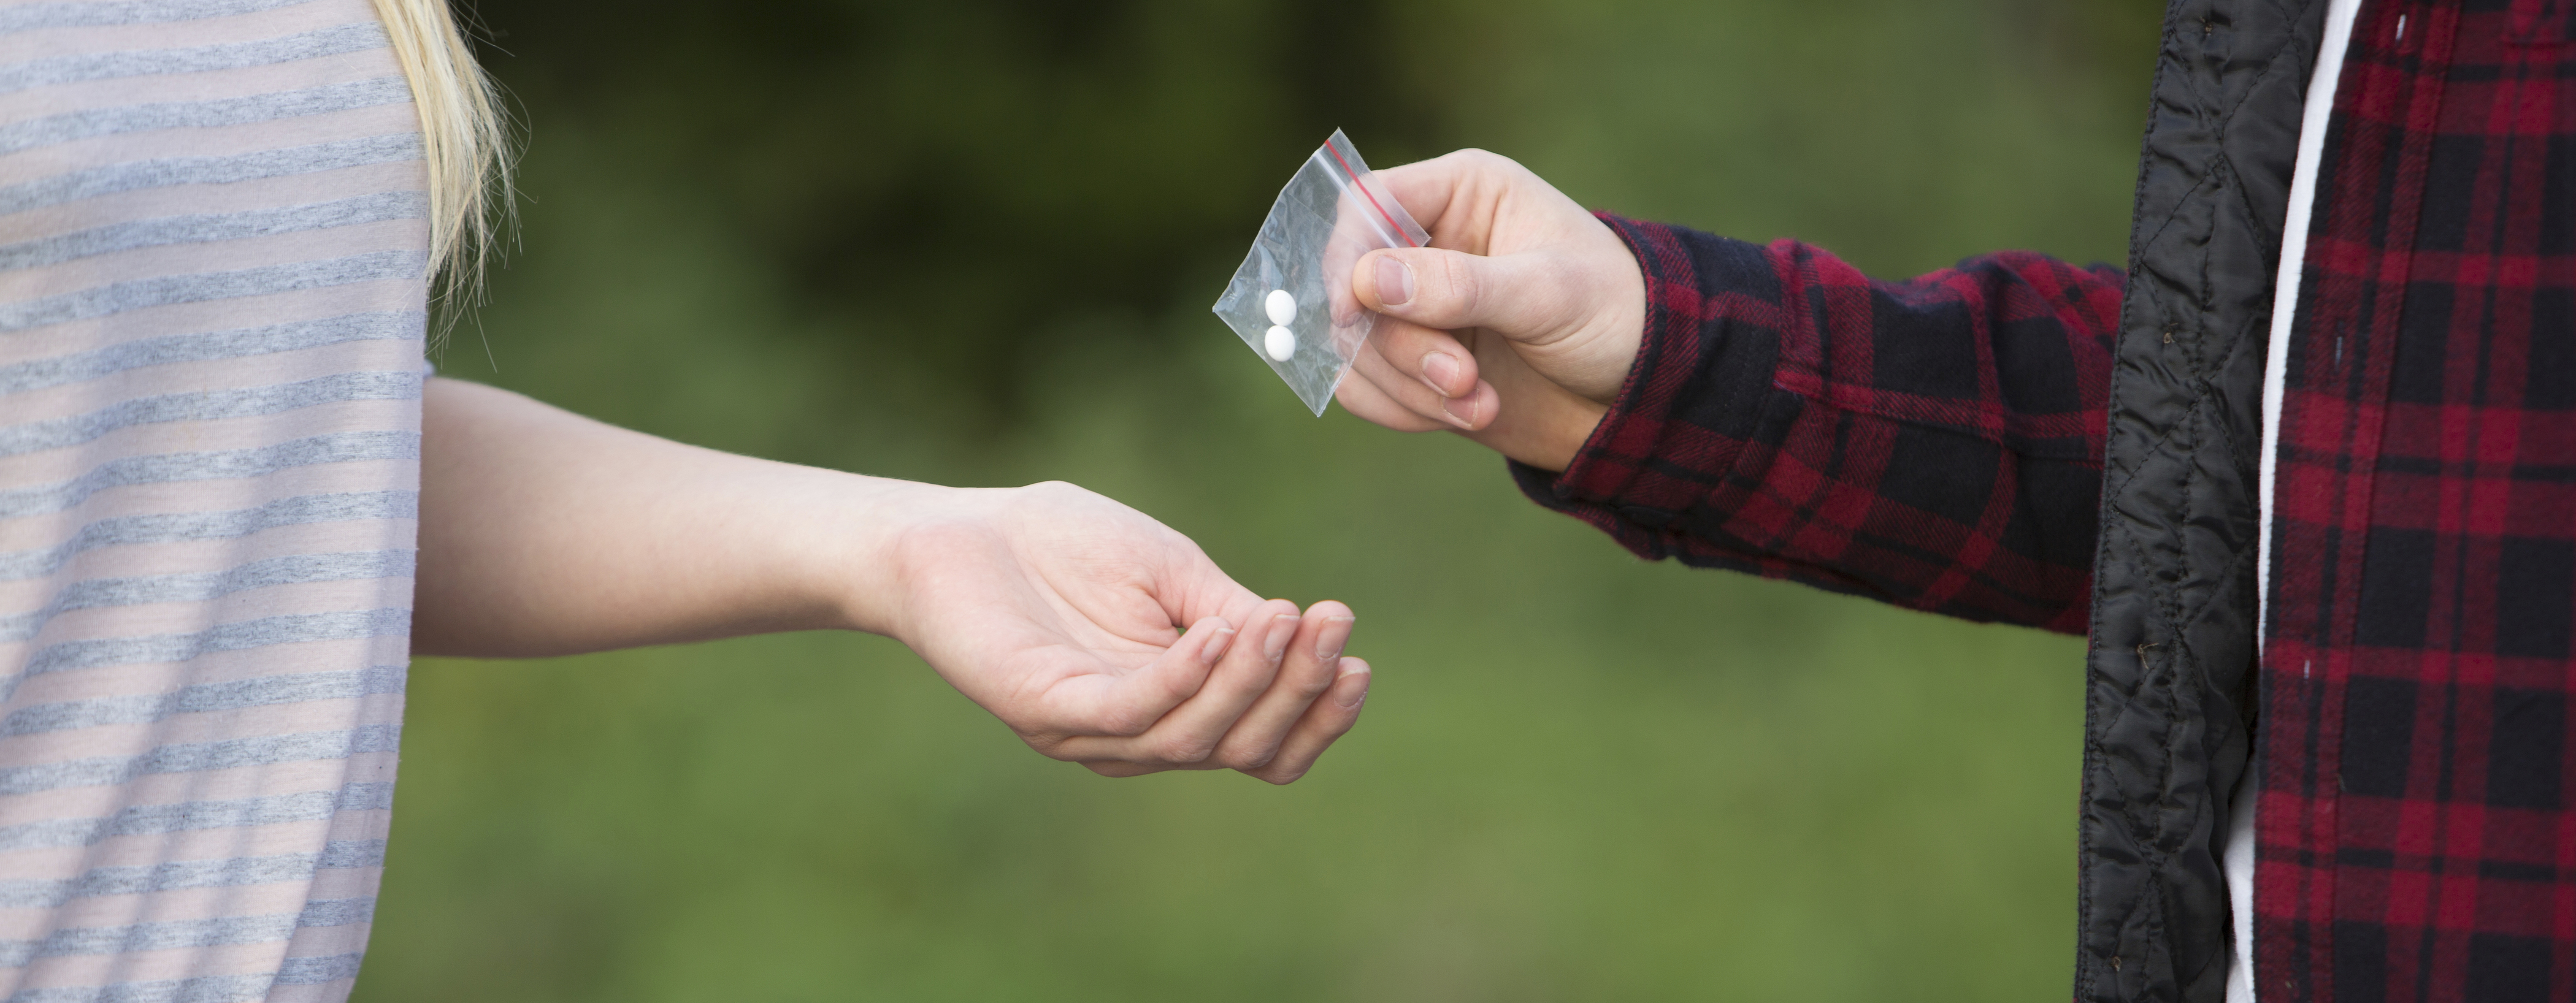 Teens trading opioid pills on the street